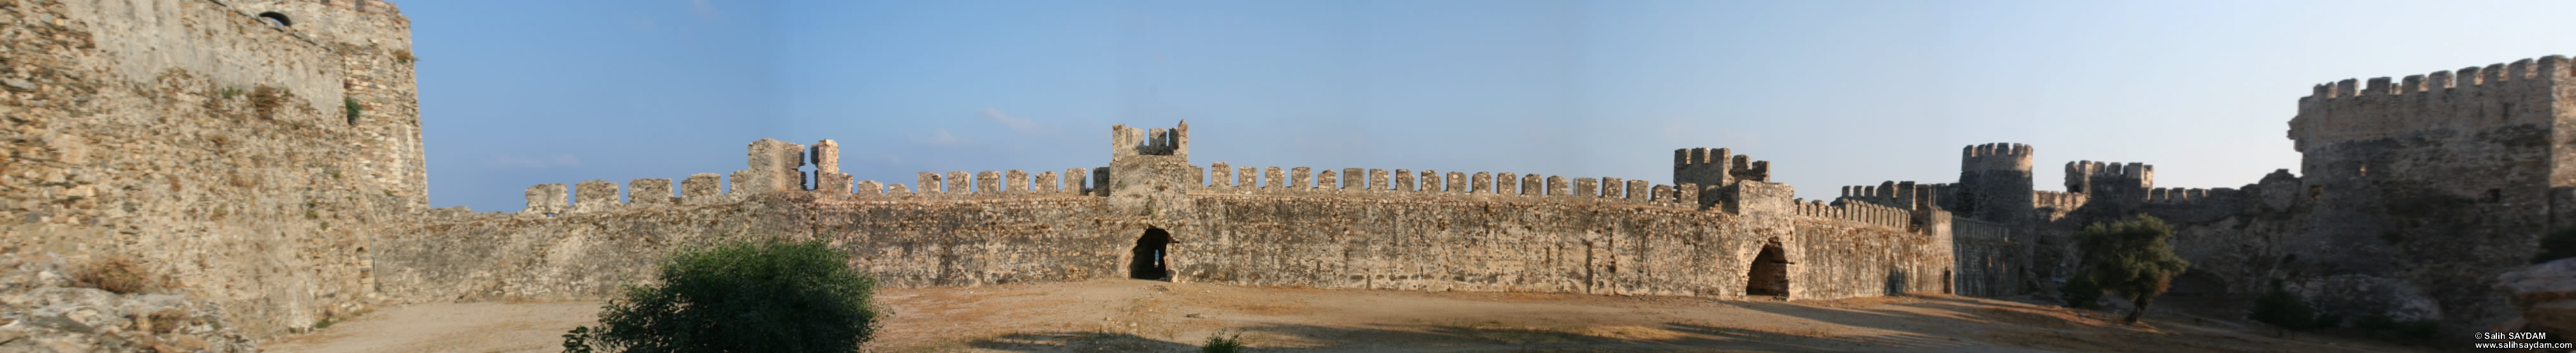 Anamur (Mamure) Castle Panorama 6 (Mersin, Anamur)